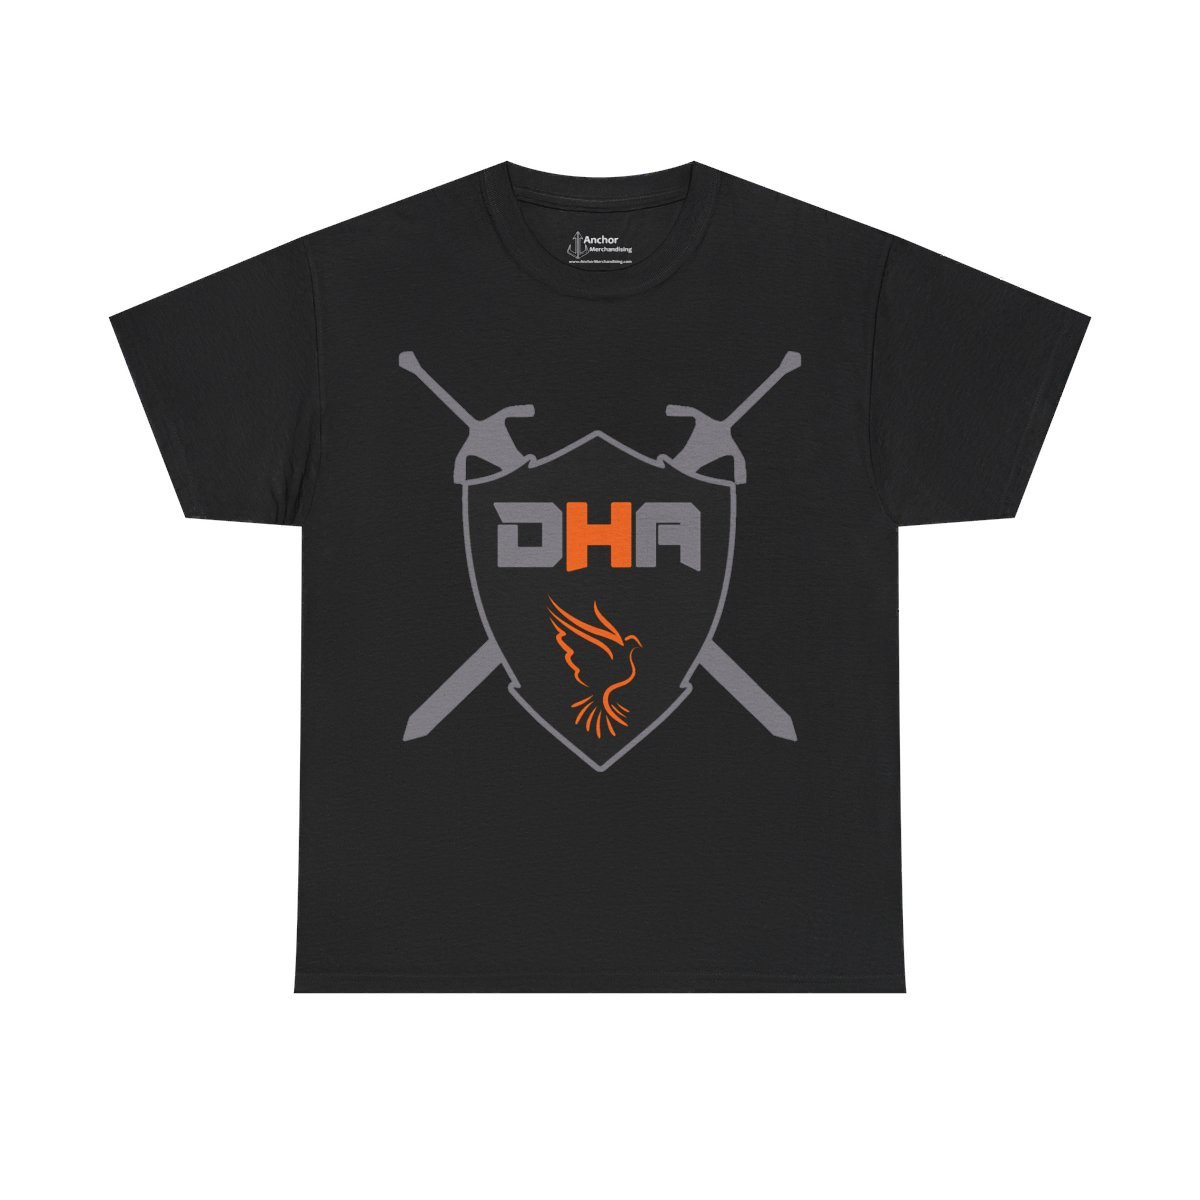 Metal House DHA Short Sleeve Tshirt